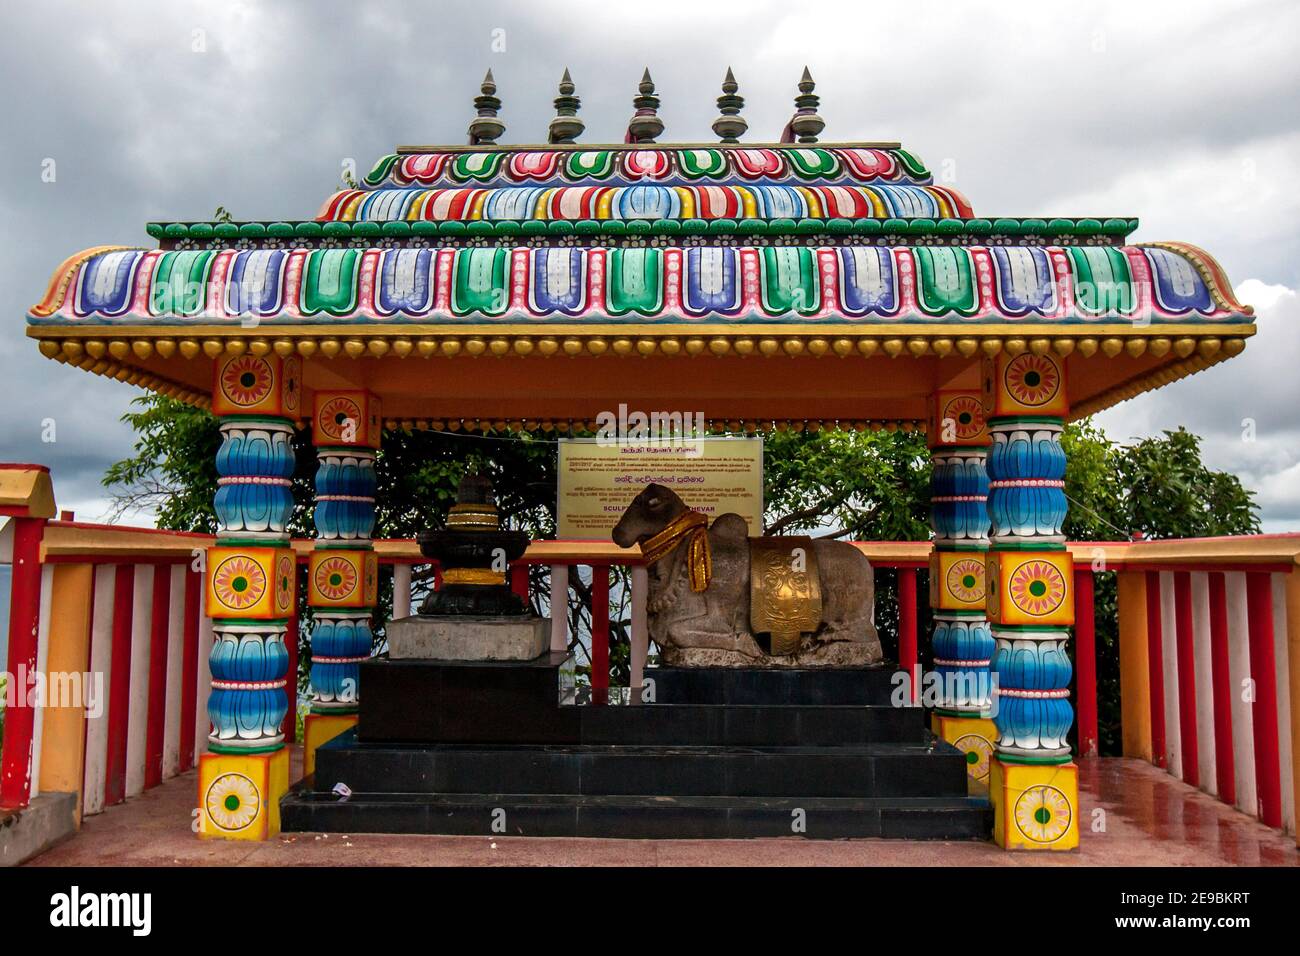 Die Skulptur von Nanthi Thevar, die während Erdarbeiten neben dem Pillaiyar Schrein am Koneswaram Kovil in Trincomalee, Sri Lanka entdeckt wurde. Stockfoto